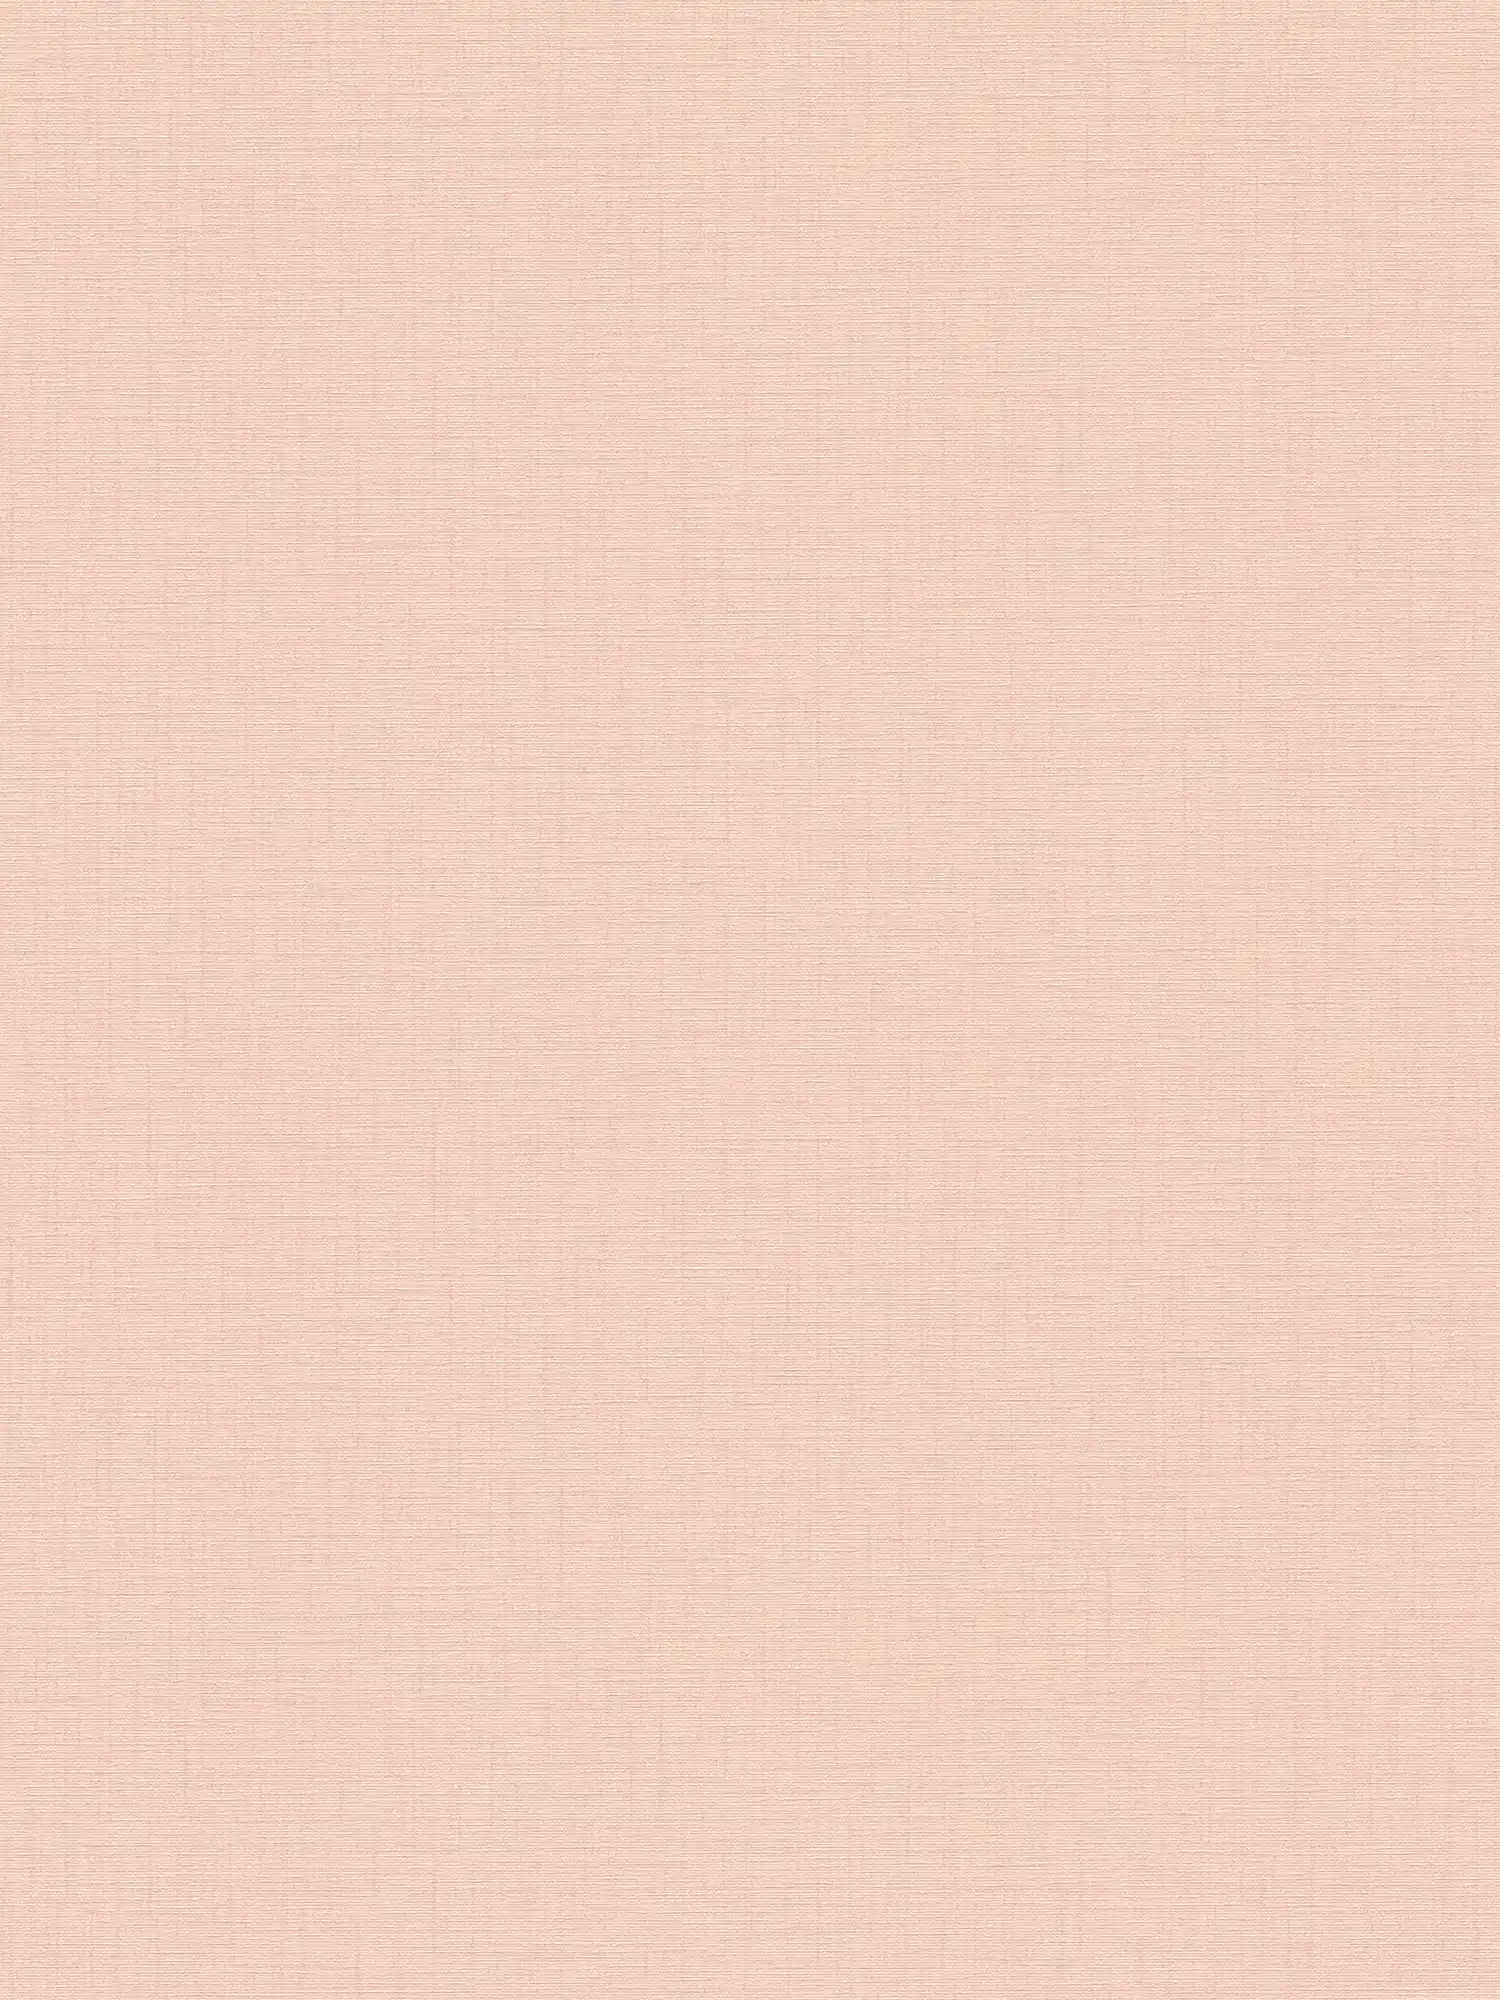 Papier peint rose pâle uni avec structure en lin - rose
